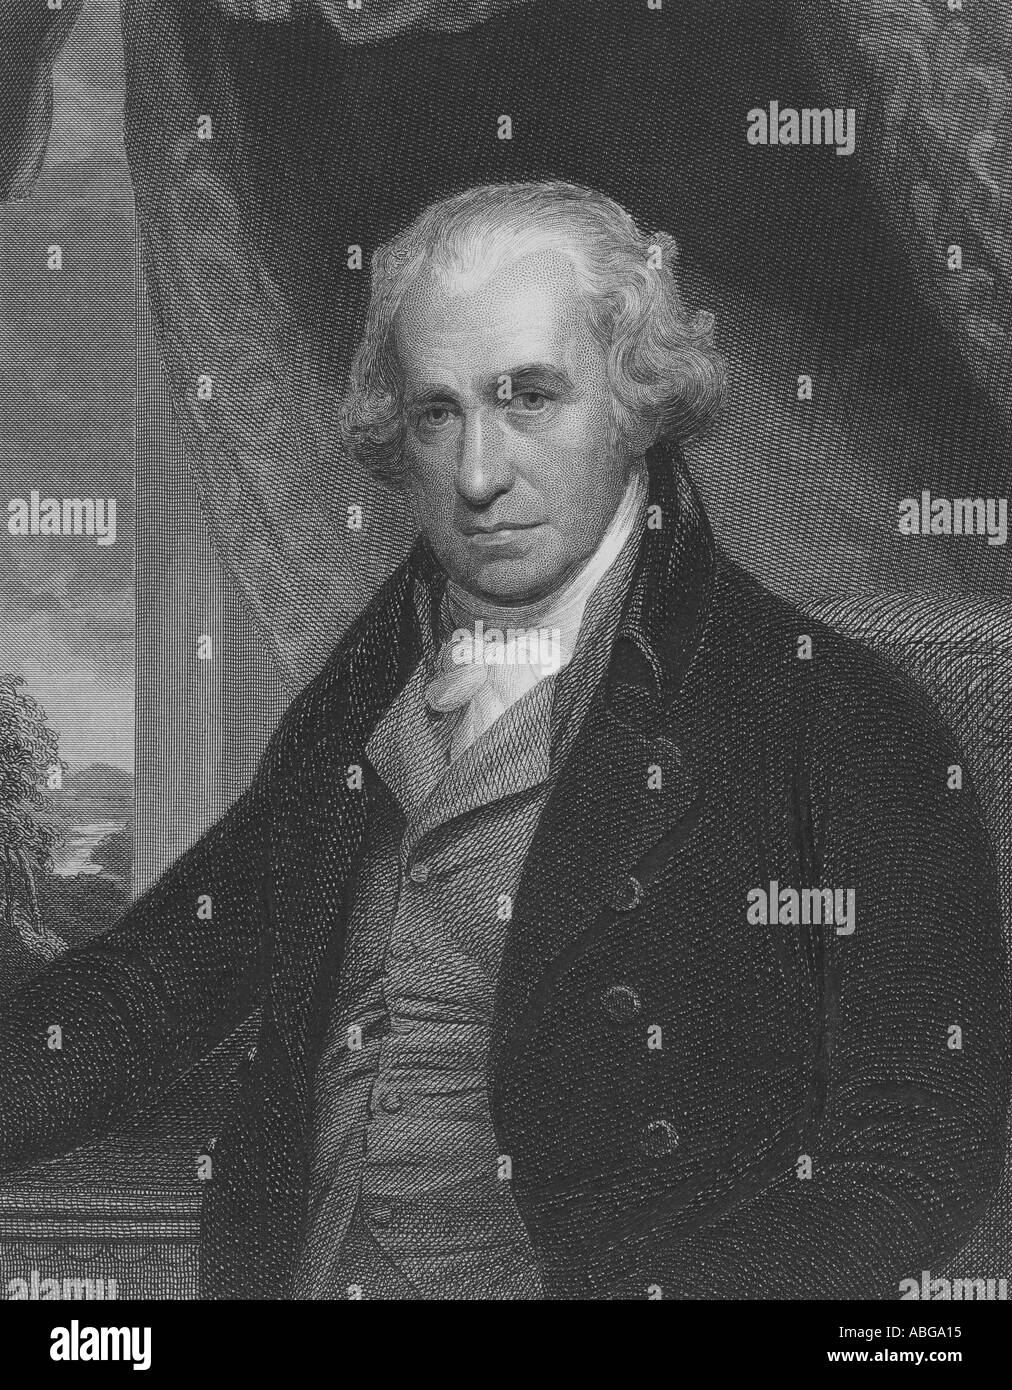 James Watt Scottish inventor and mechanical engineer 1736-1819 Stock Photo